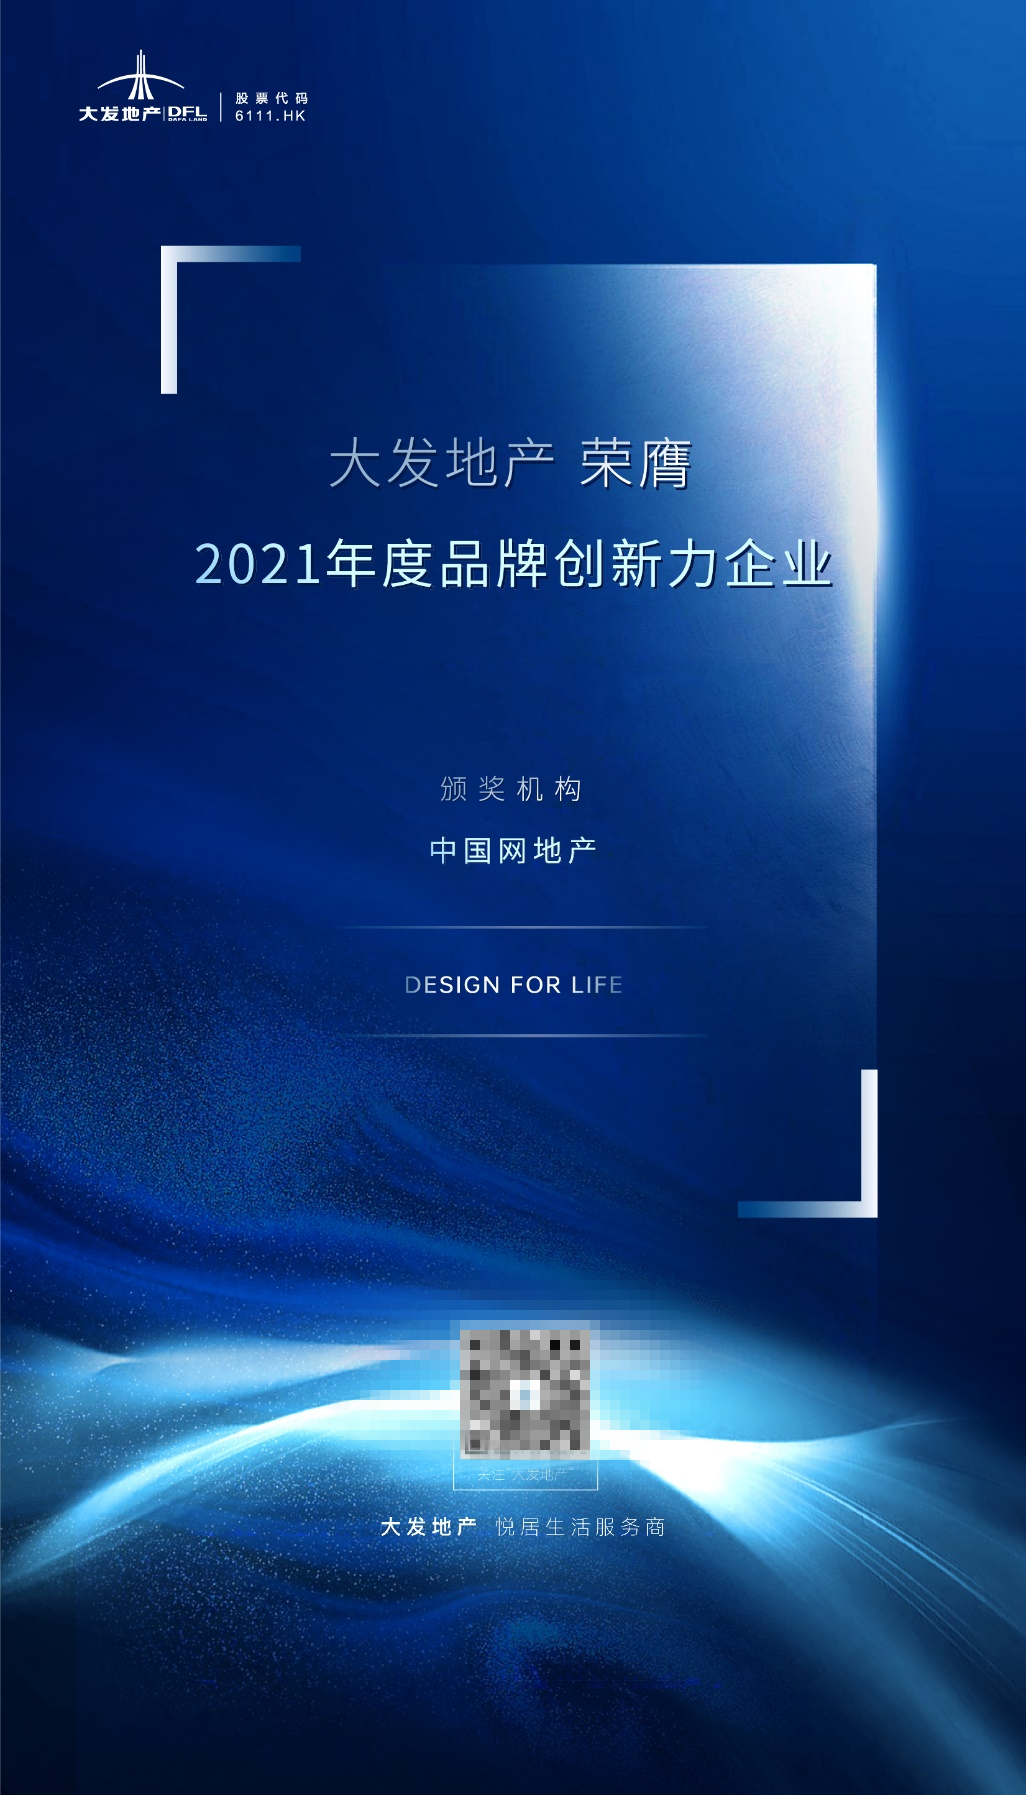  大發地産榮膺“2021年度品牌創新力企業”殊榮_中國網地産